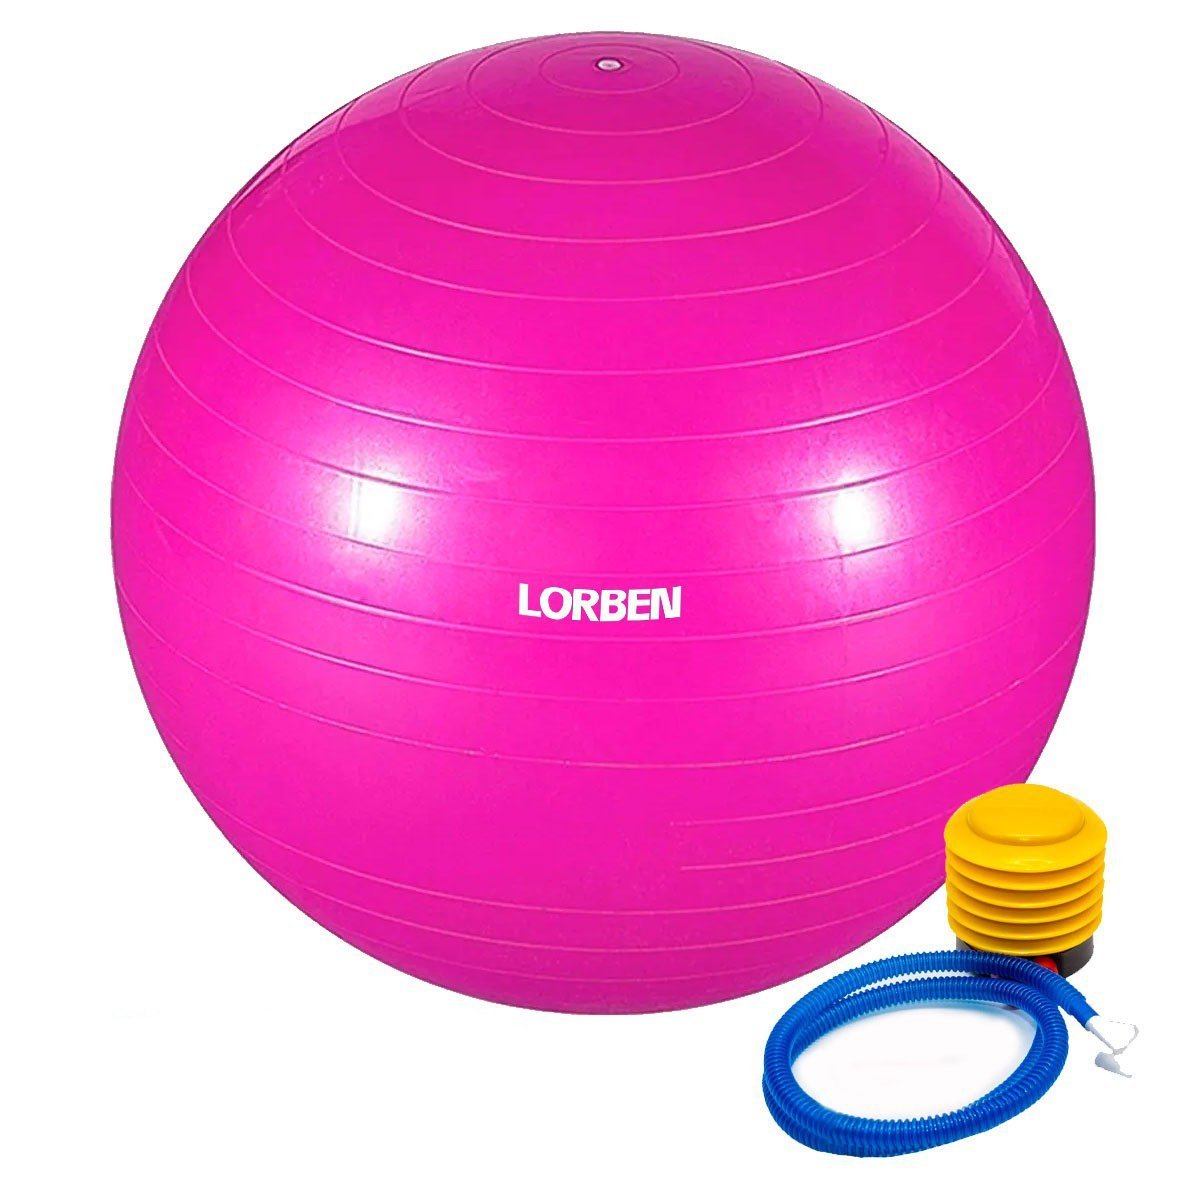 Bola de Pilates Yoga Funcional Lorben com Bomba Suporta até 150 Kg Rosa